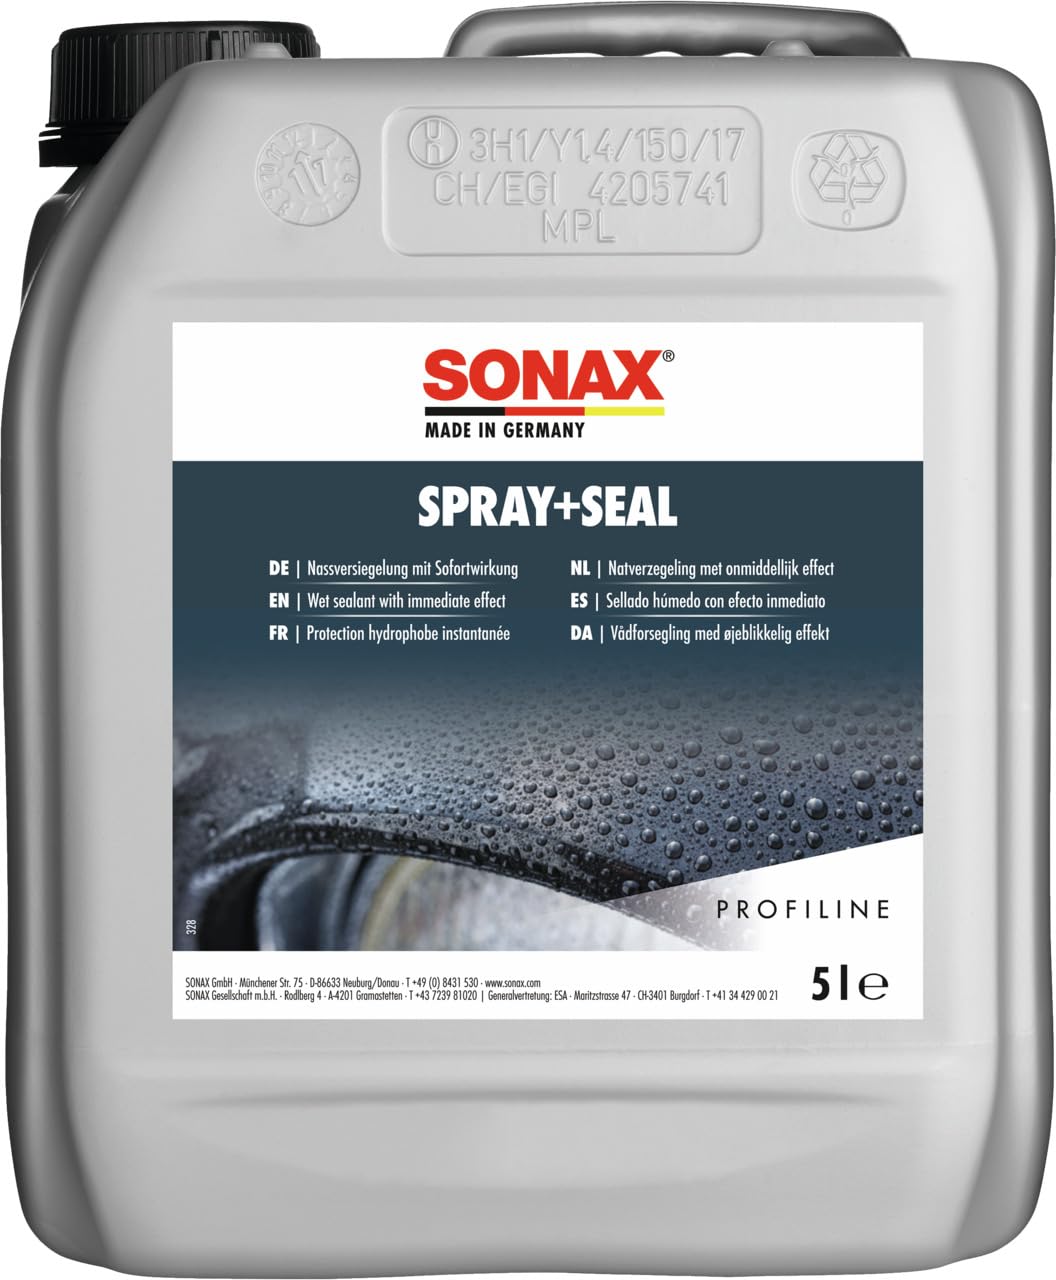 SONAX PROFILINE Spray+Seal (5 Liter) gebrauchsfertige Nassversiegelung mit sofortigem wasser- & schmutzabweisenden Effekt | Art-Nr. 02435000 von SONAX